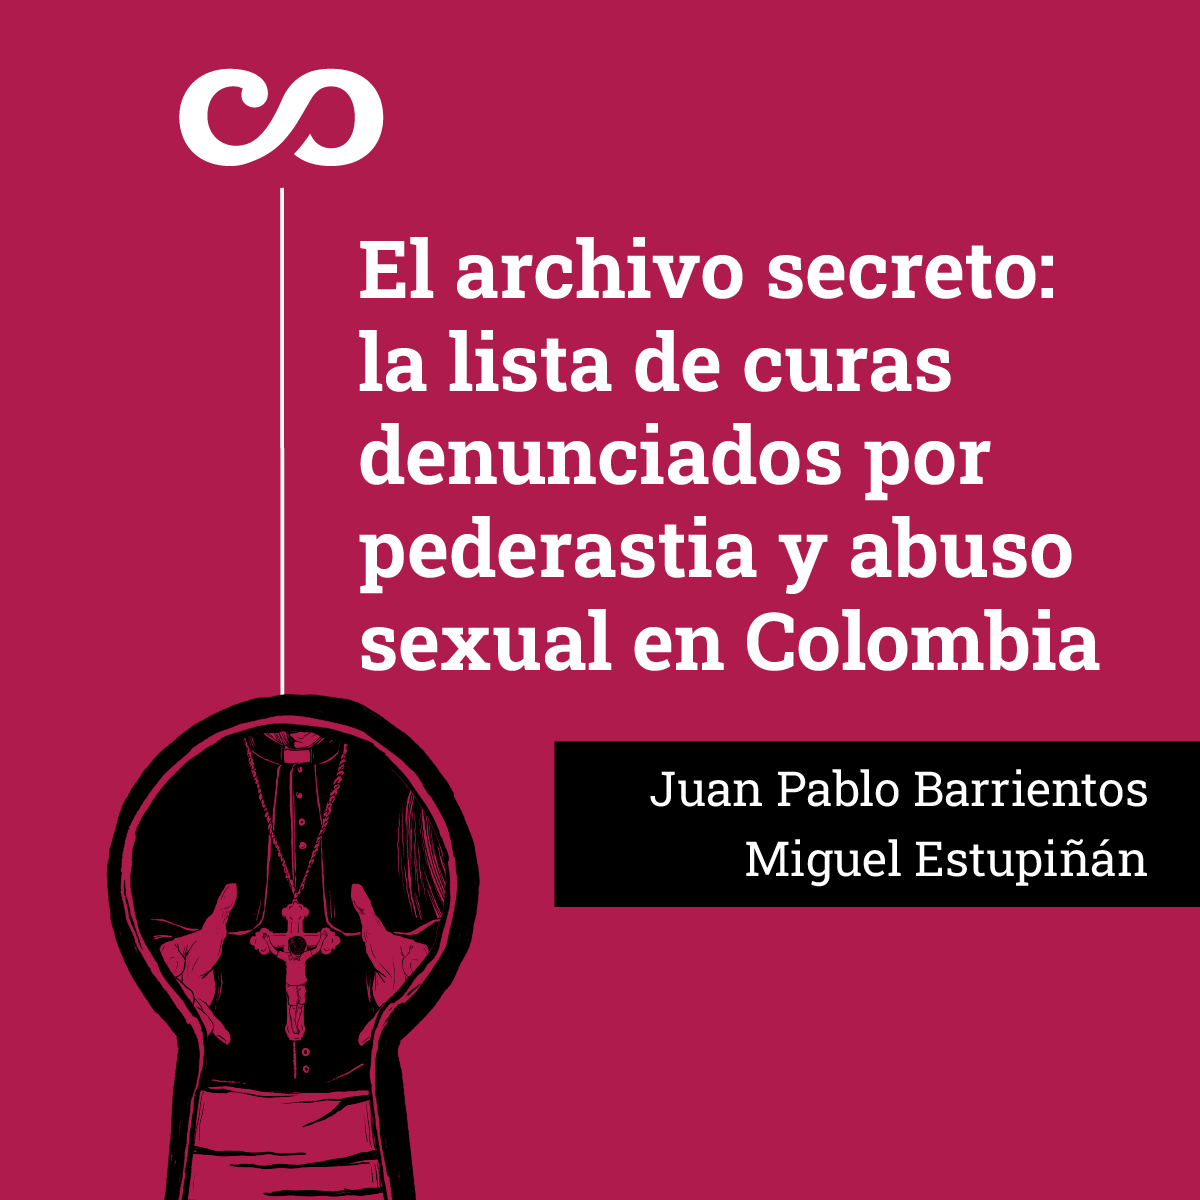 El archivo secreto: la lista de curas denunciados por pederastia y abuso sexual en Colombia